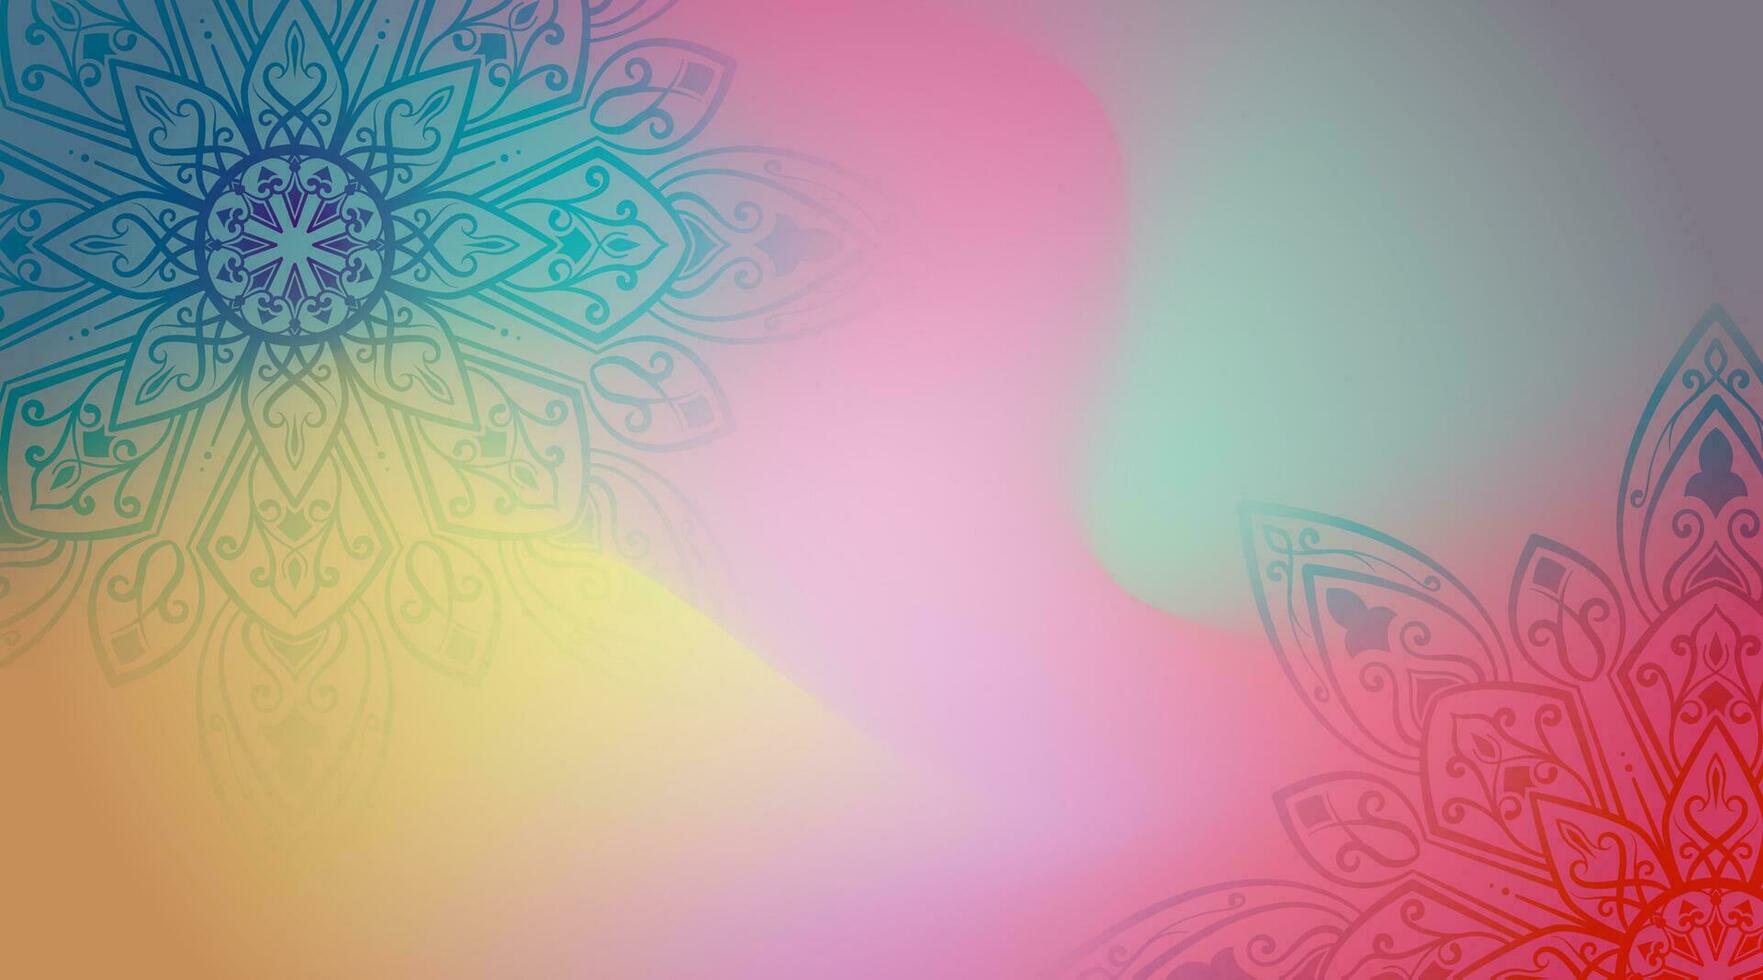 abstract kleurrijk decoratief mandala backround vector